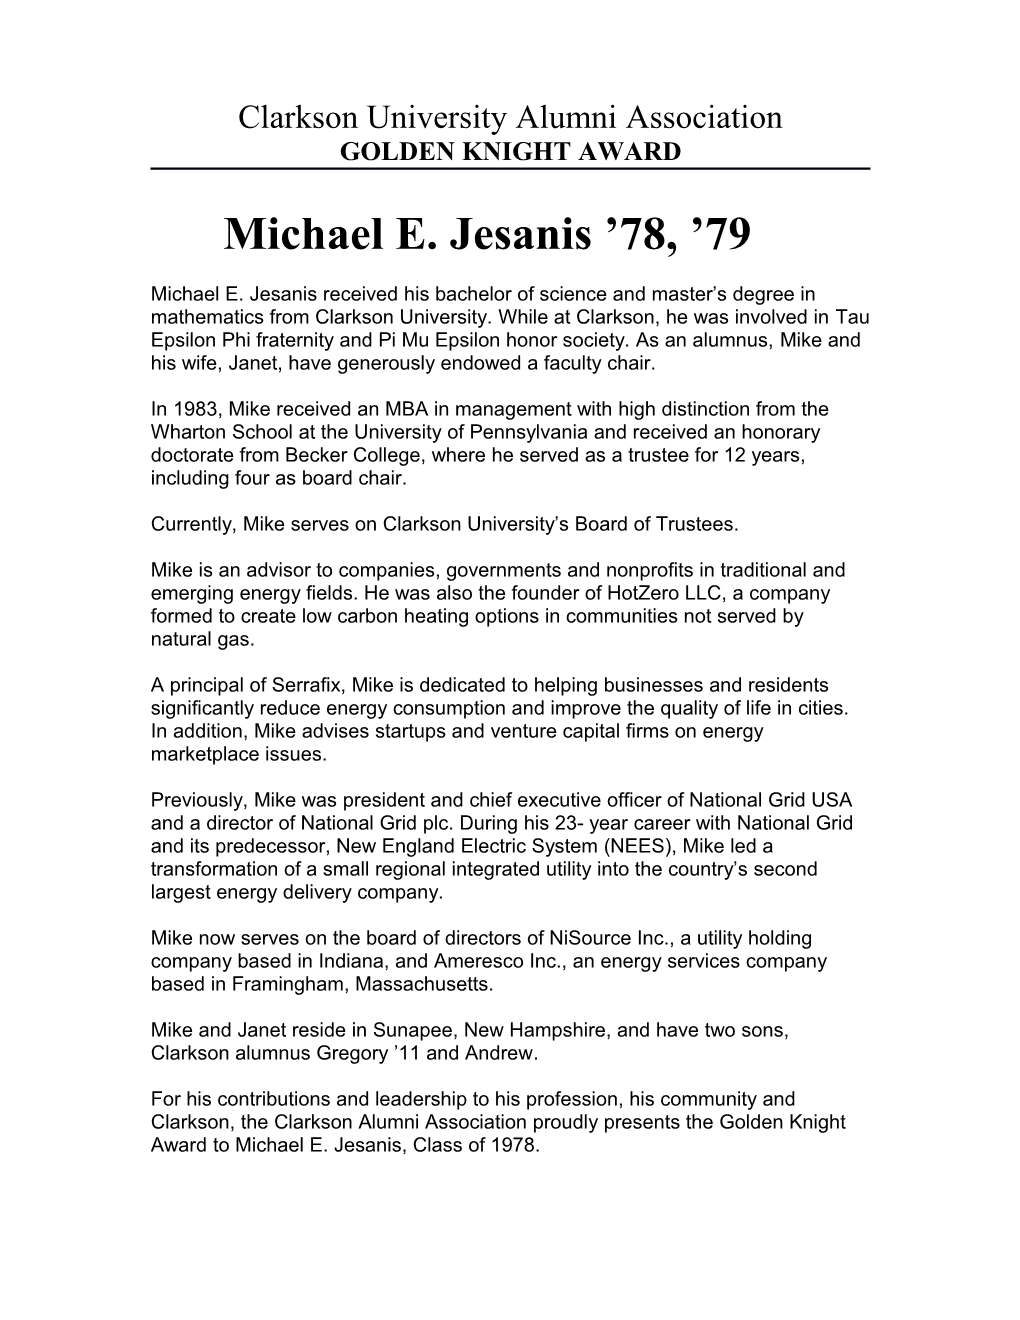 Biography of Michael E